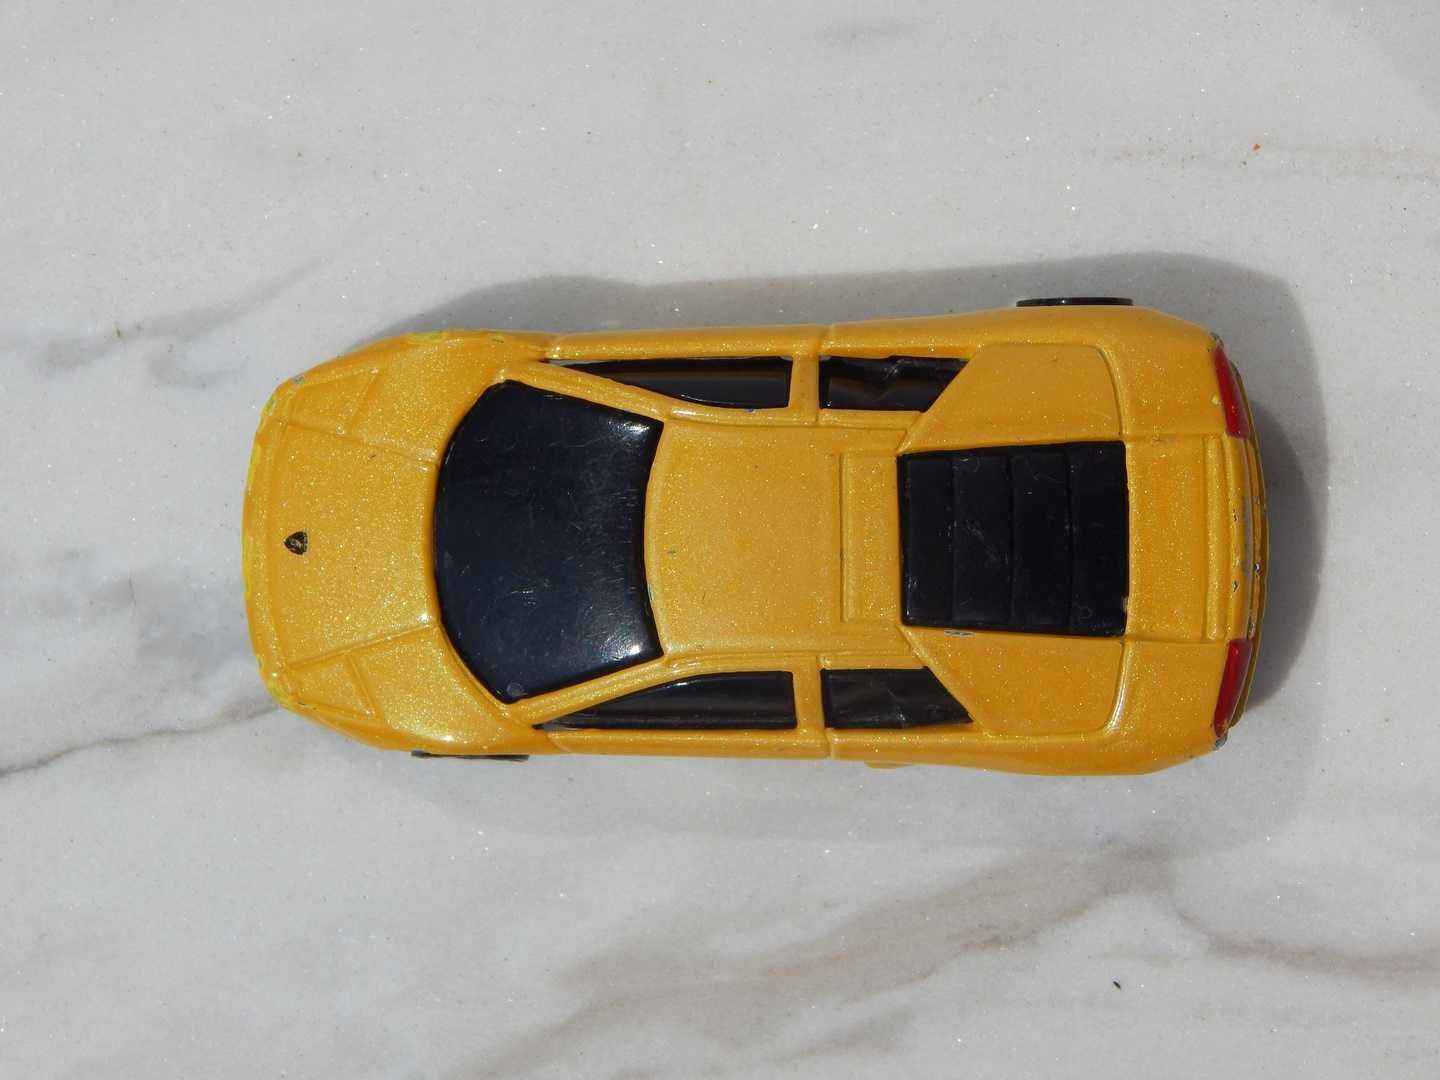 Macheta Lamborghini Murcielago 2001 sc 1:64 Maisto uzat